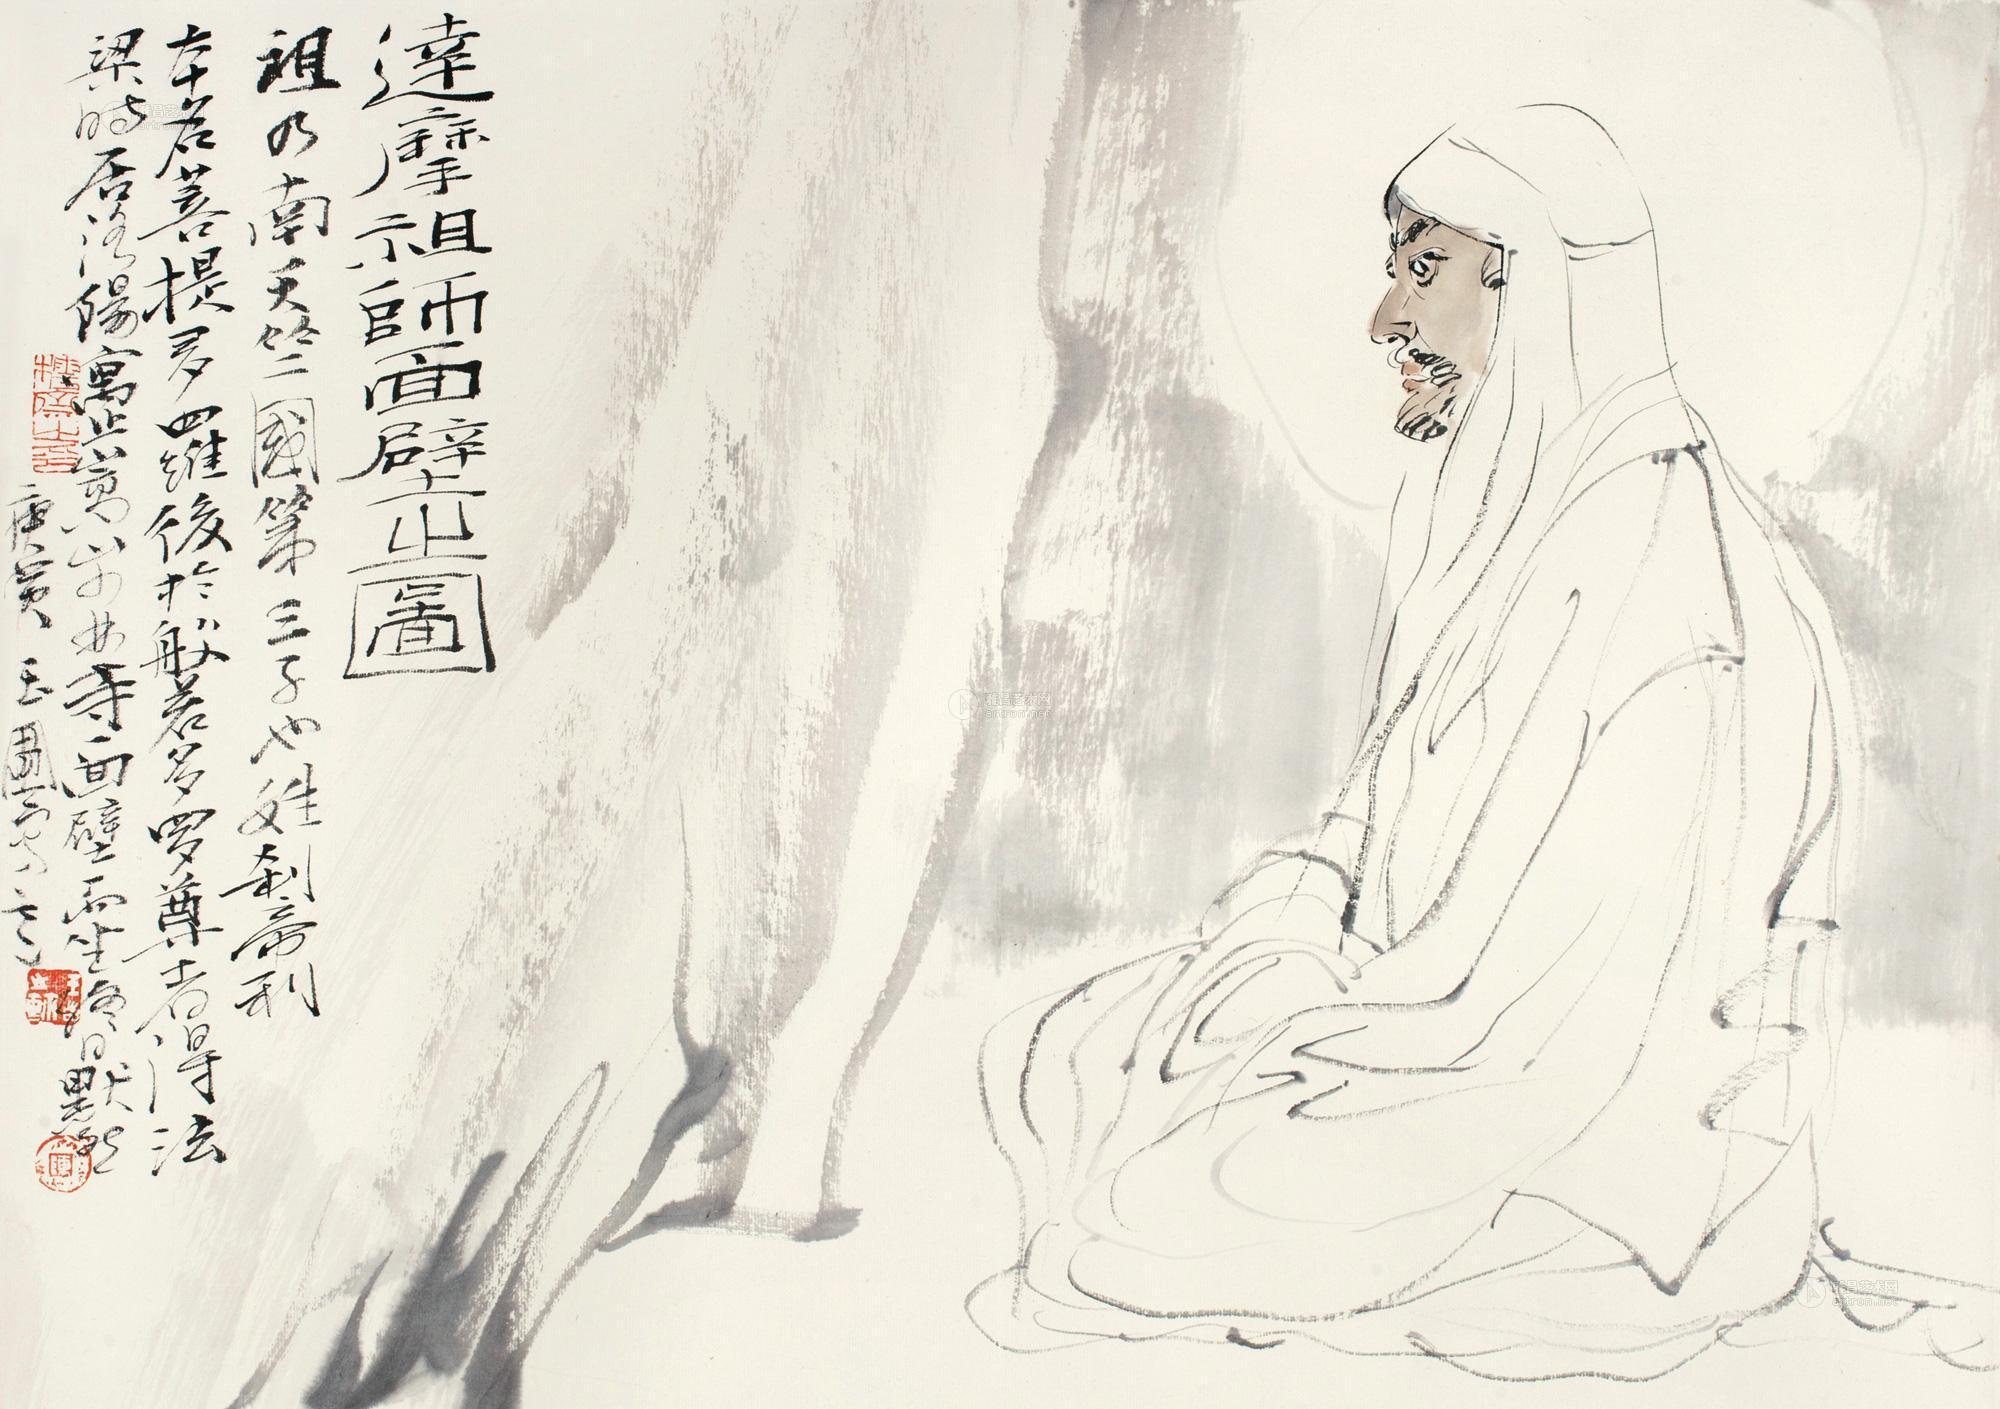 1030 庚寅(2010年)作 达摩祖师面壁之图 镜心 纸本